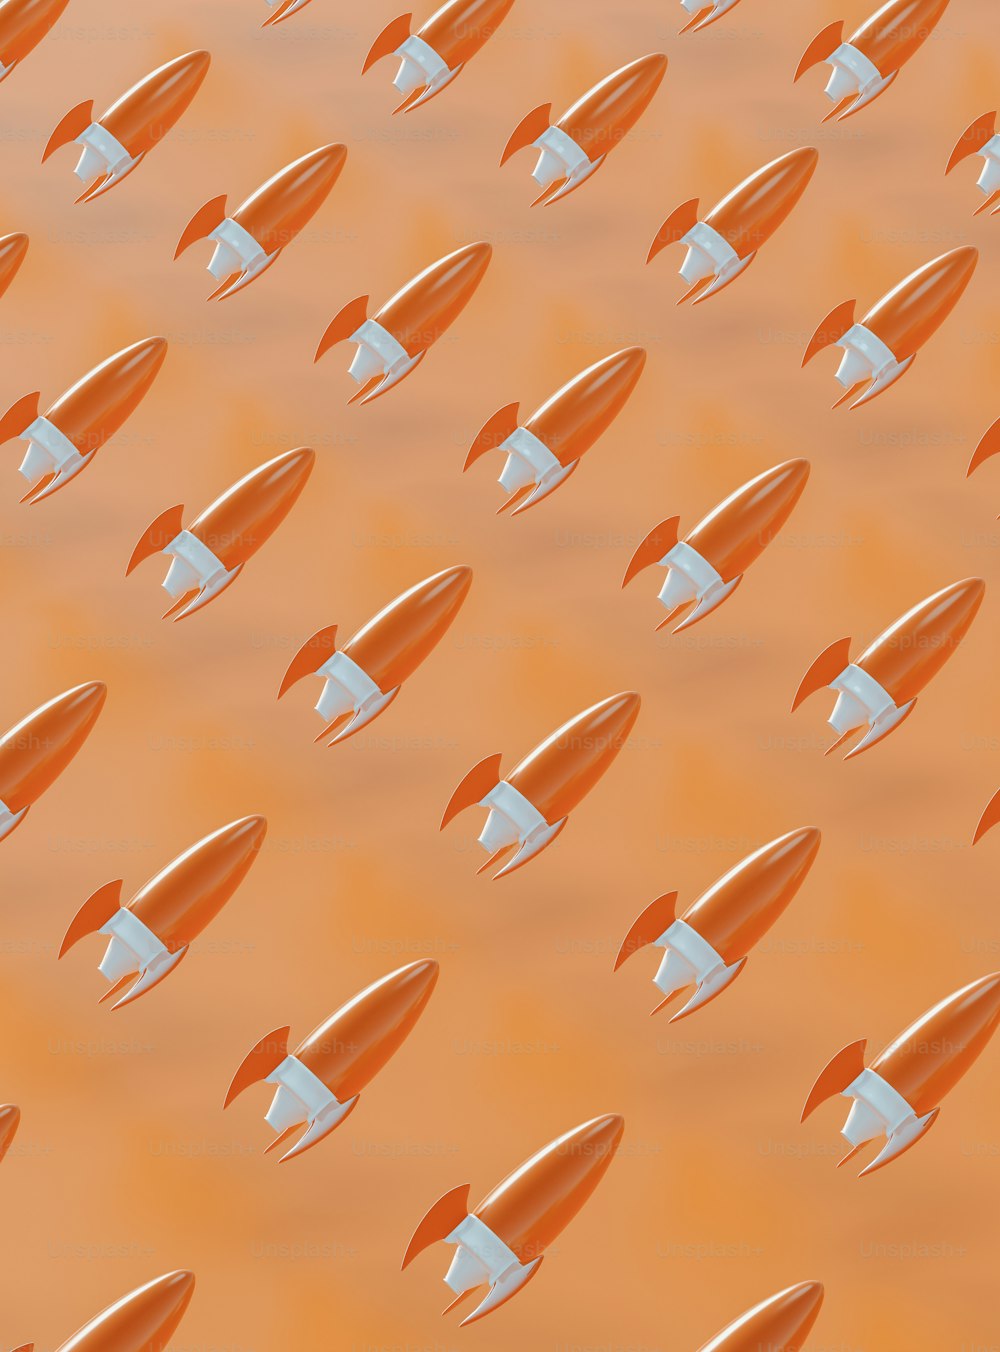 Un gruppo di razzi arancioni e bianchi che volano nell'aria